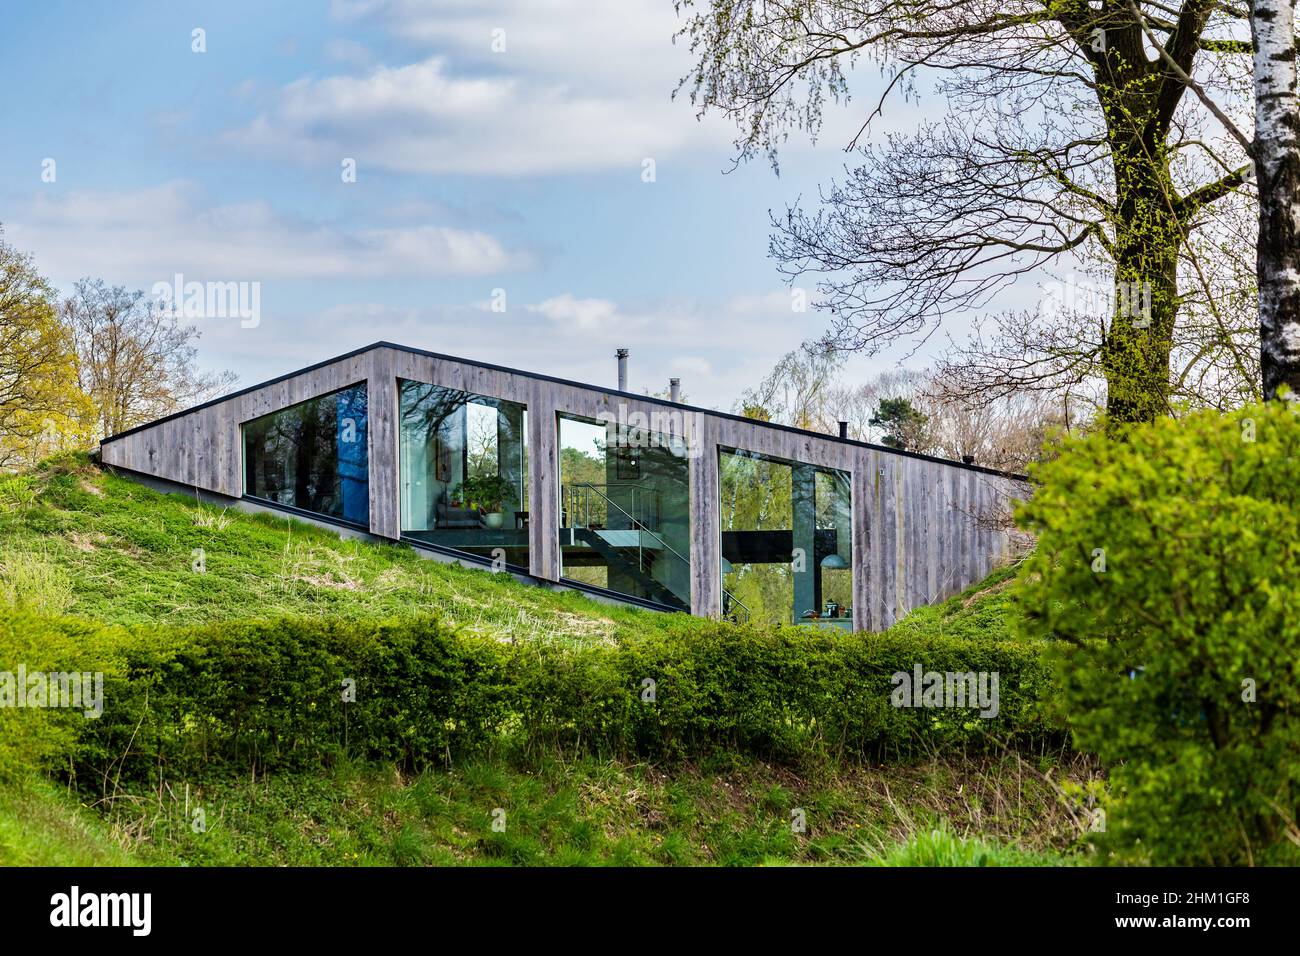 Diepenheim, pays-Bas - 25 avril 2021 : maison moderne et durable, enchâssée dans une petite colline, dans le paysage de Hof van Twente, aux pays-Bas Banque D'Images